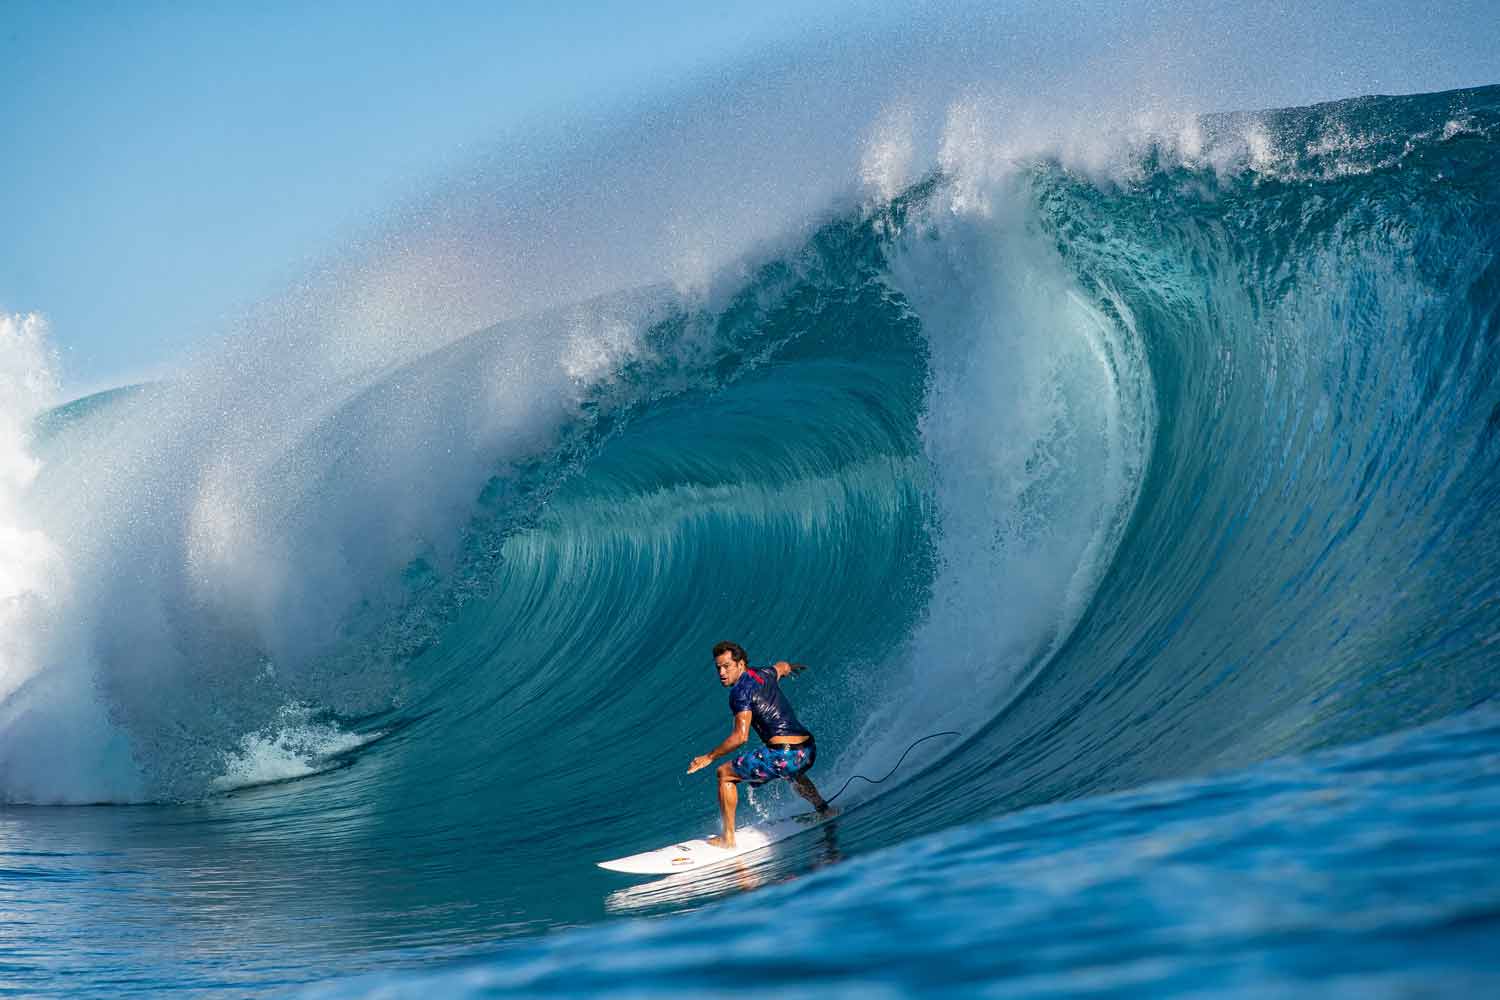 Am 20. Juni feiert die Welt den internationalen Surfing Day